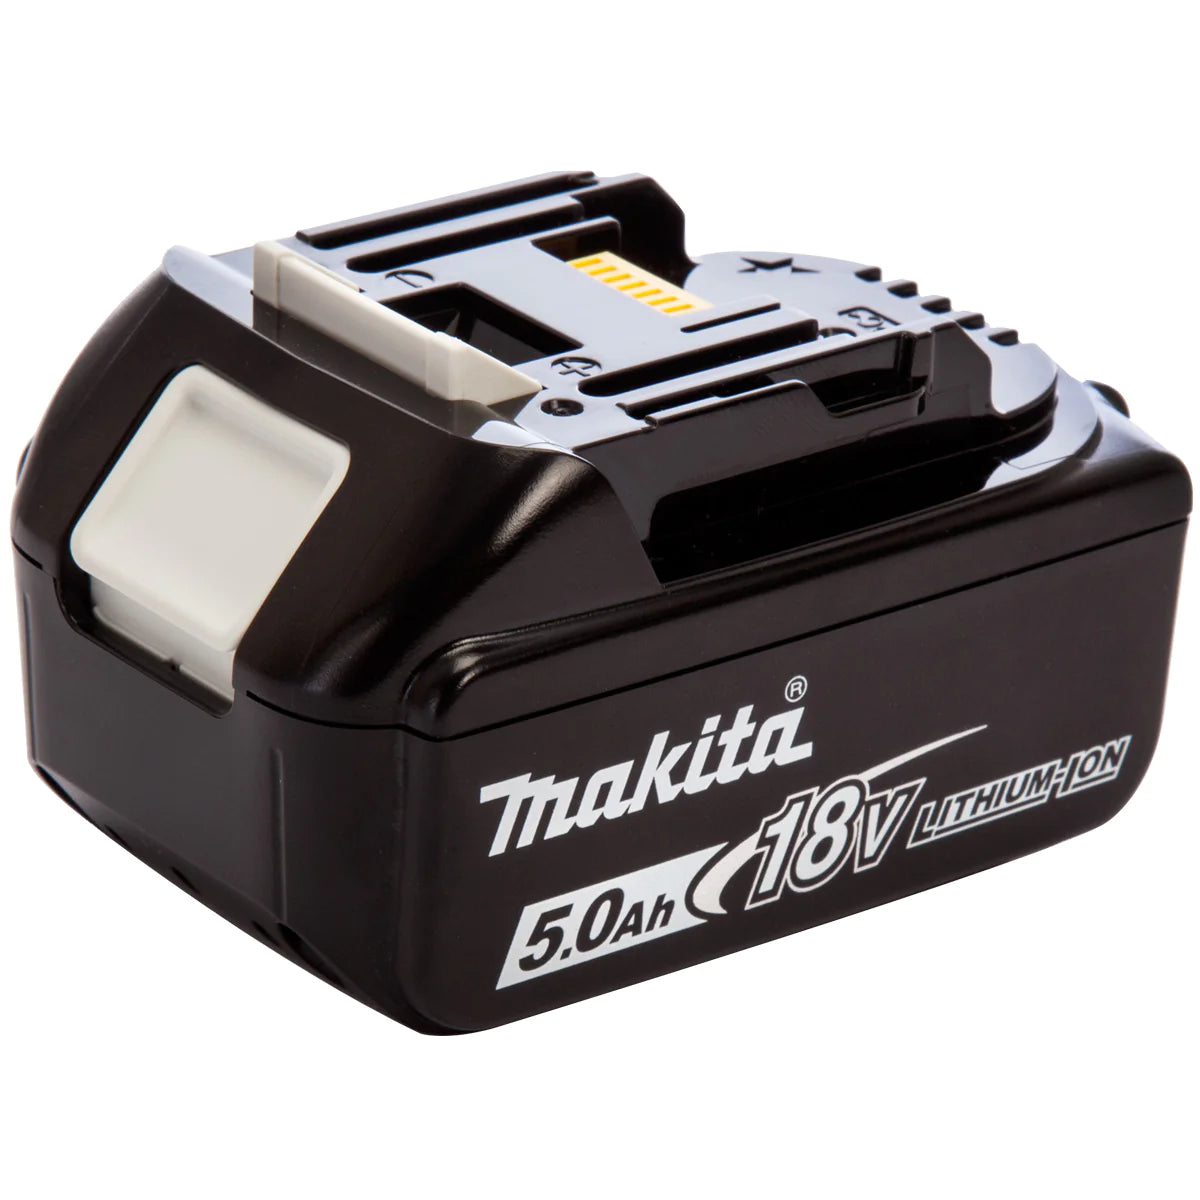 Makita 5 Piece Kit 18V Li-ion With 2 x 5.0Ah Batteries Charger